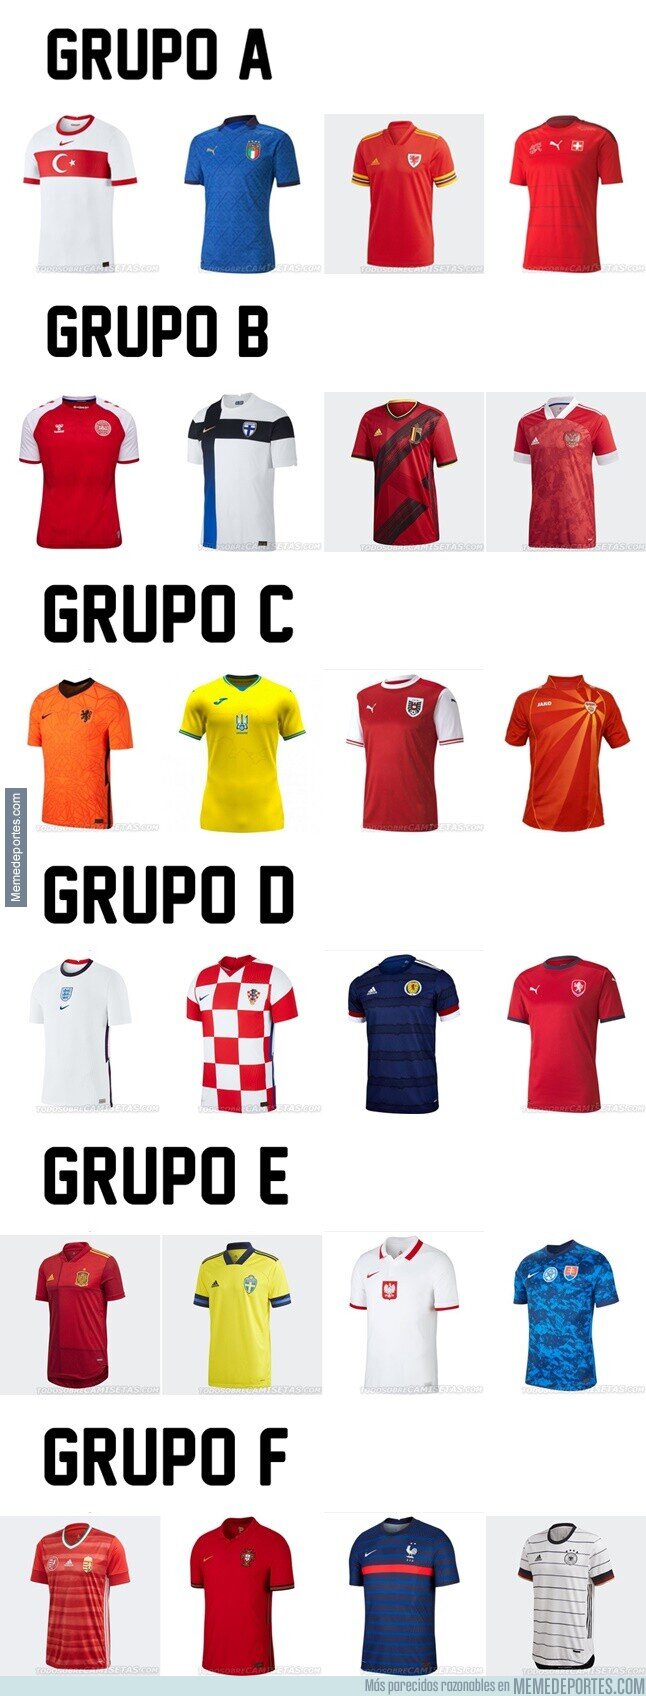 1137245 - Las camisetas de la Eurocopa